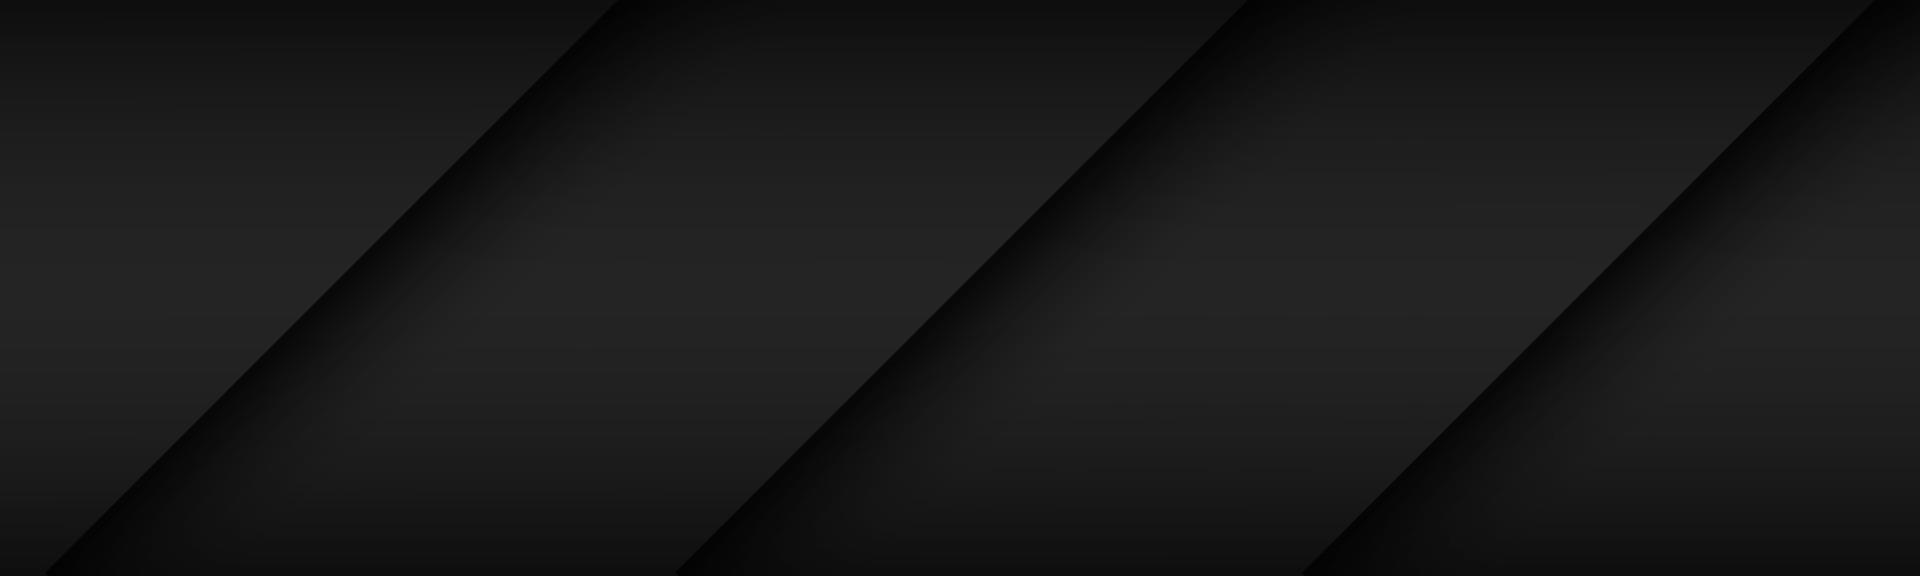 Cabeçalho de material moderno preto com camadas sobrepostas com cores cmyk. banner para o seu negócio. fundo widescreen abstrato do vetor